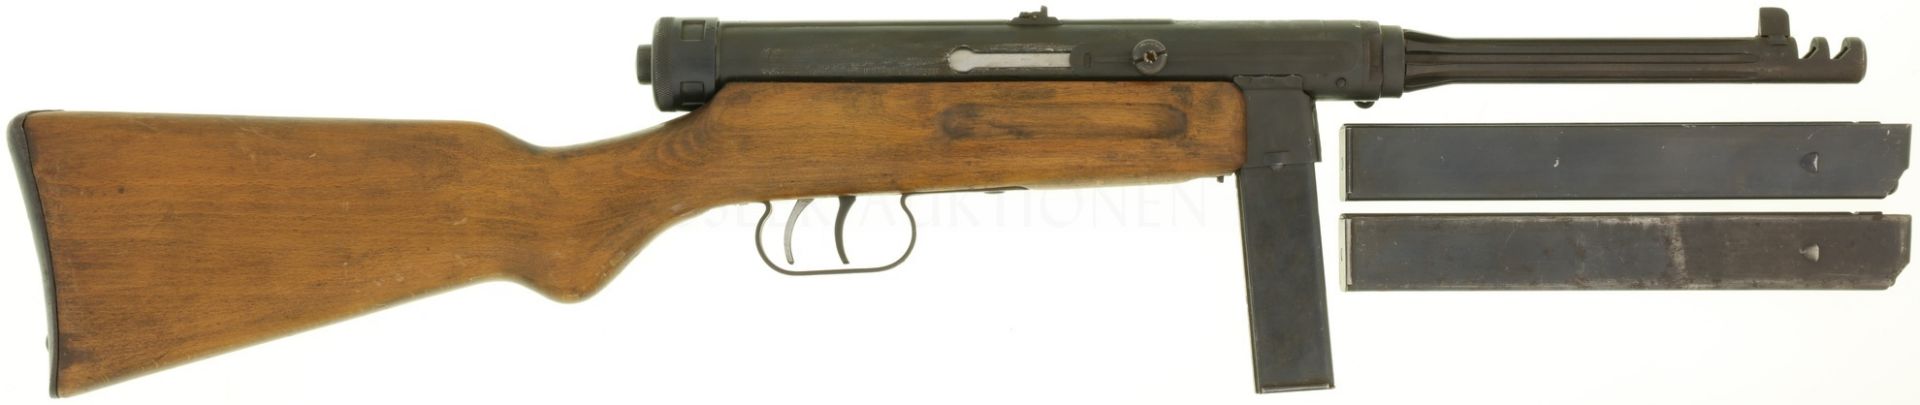 Maschinenpistole, Beretta MP38/49, Mod. 4, Kal. 9mmP